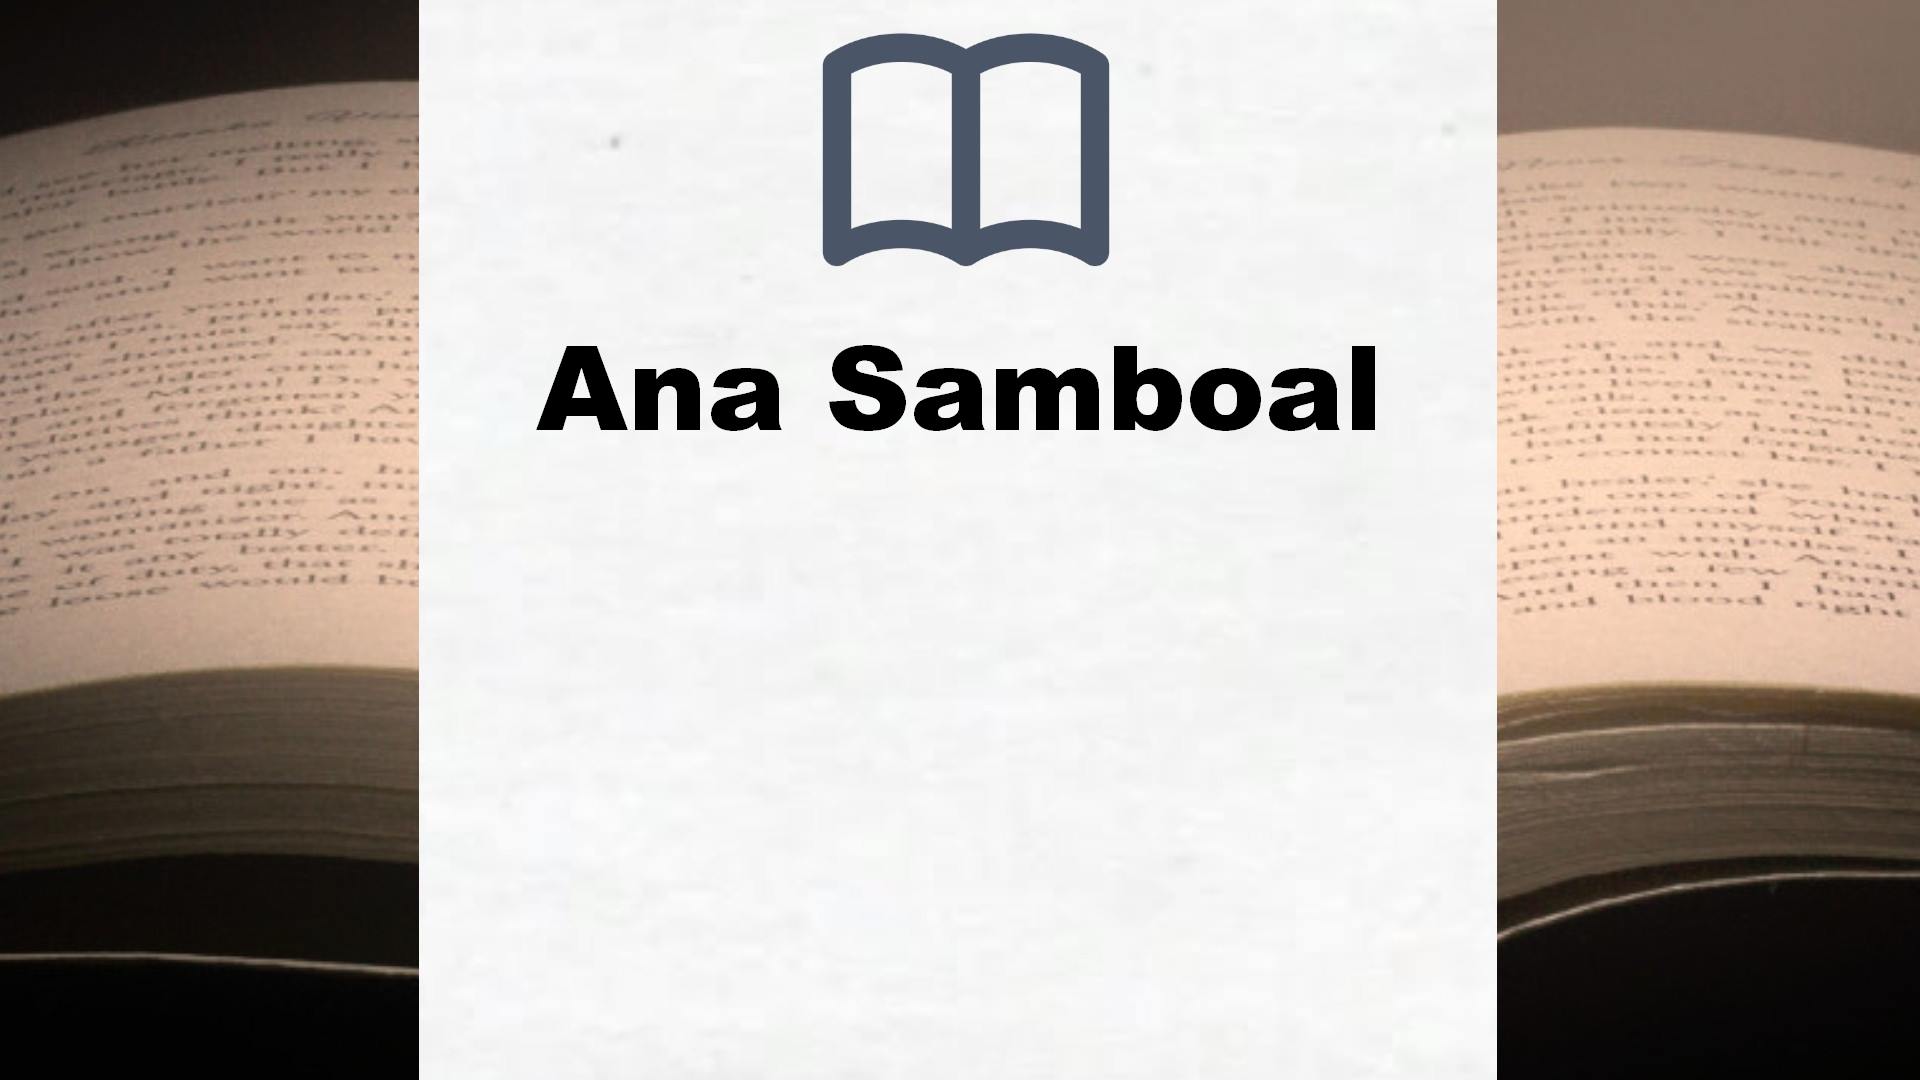 Libros Ana Samboal